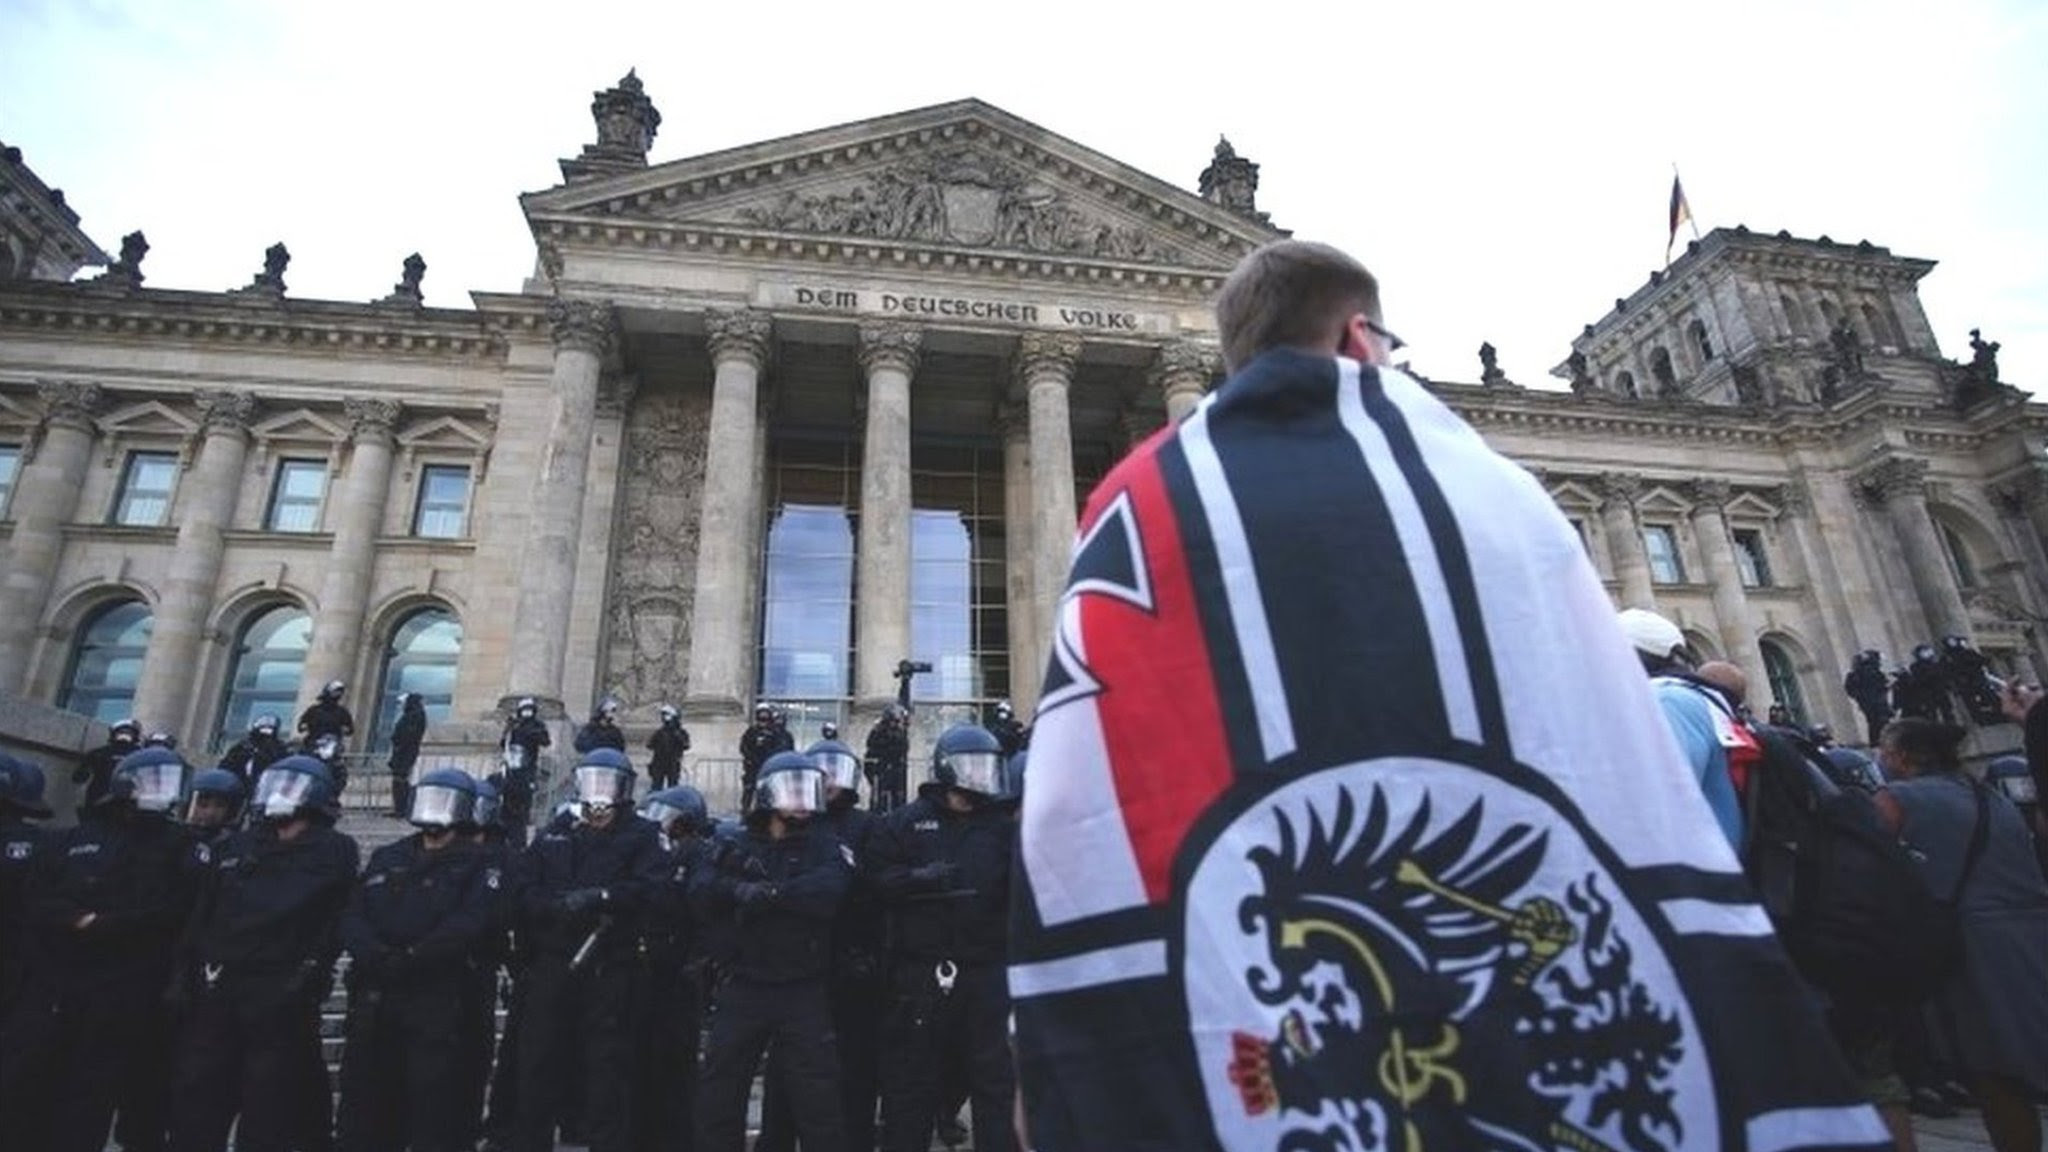 ドイツの新型ウイルス対策抗議デモ 国会議事堂狙った動きに非難 cニュース